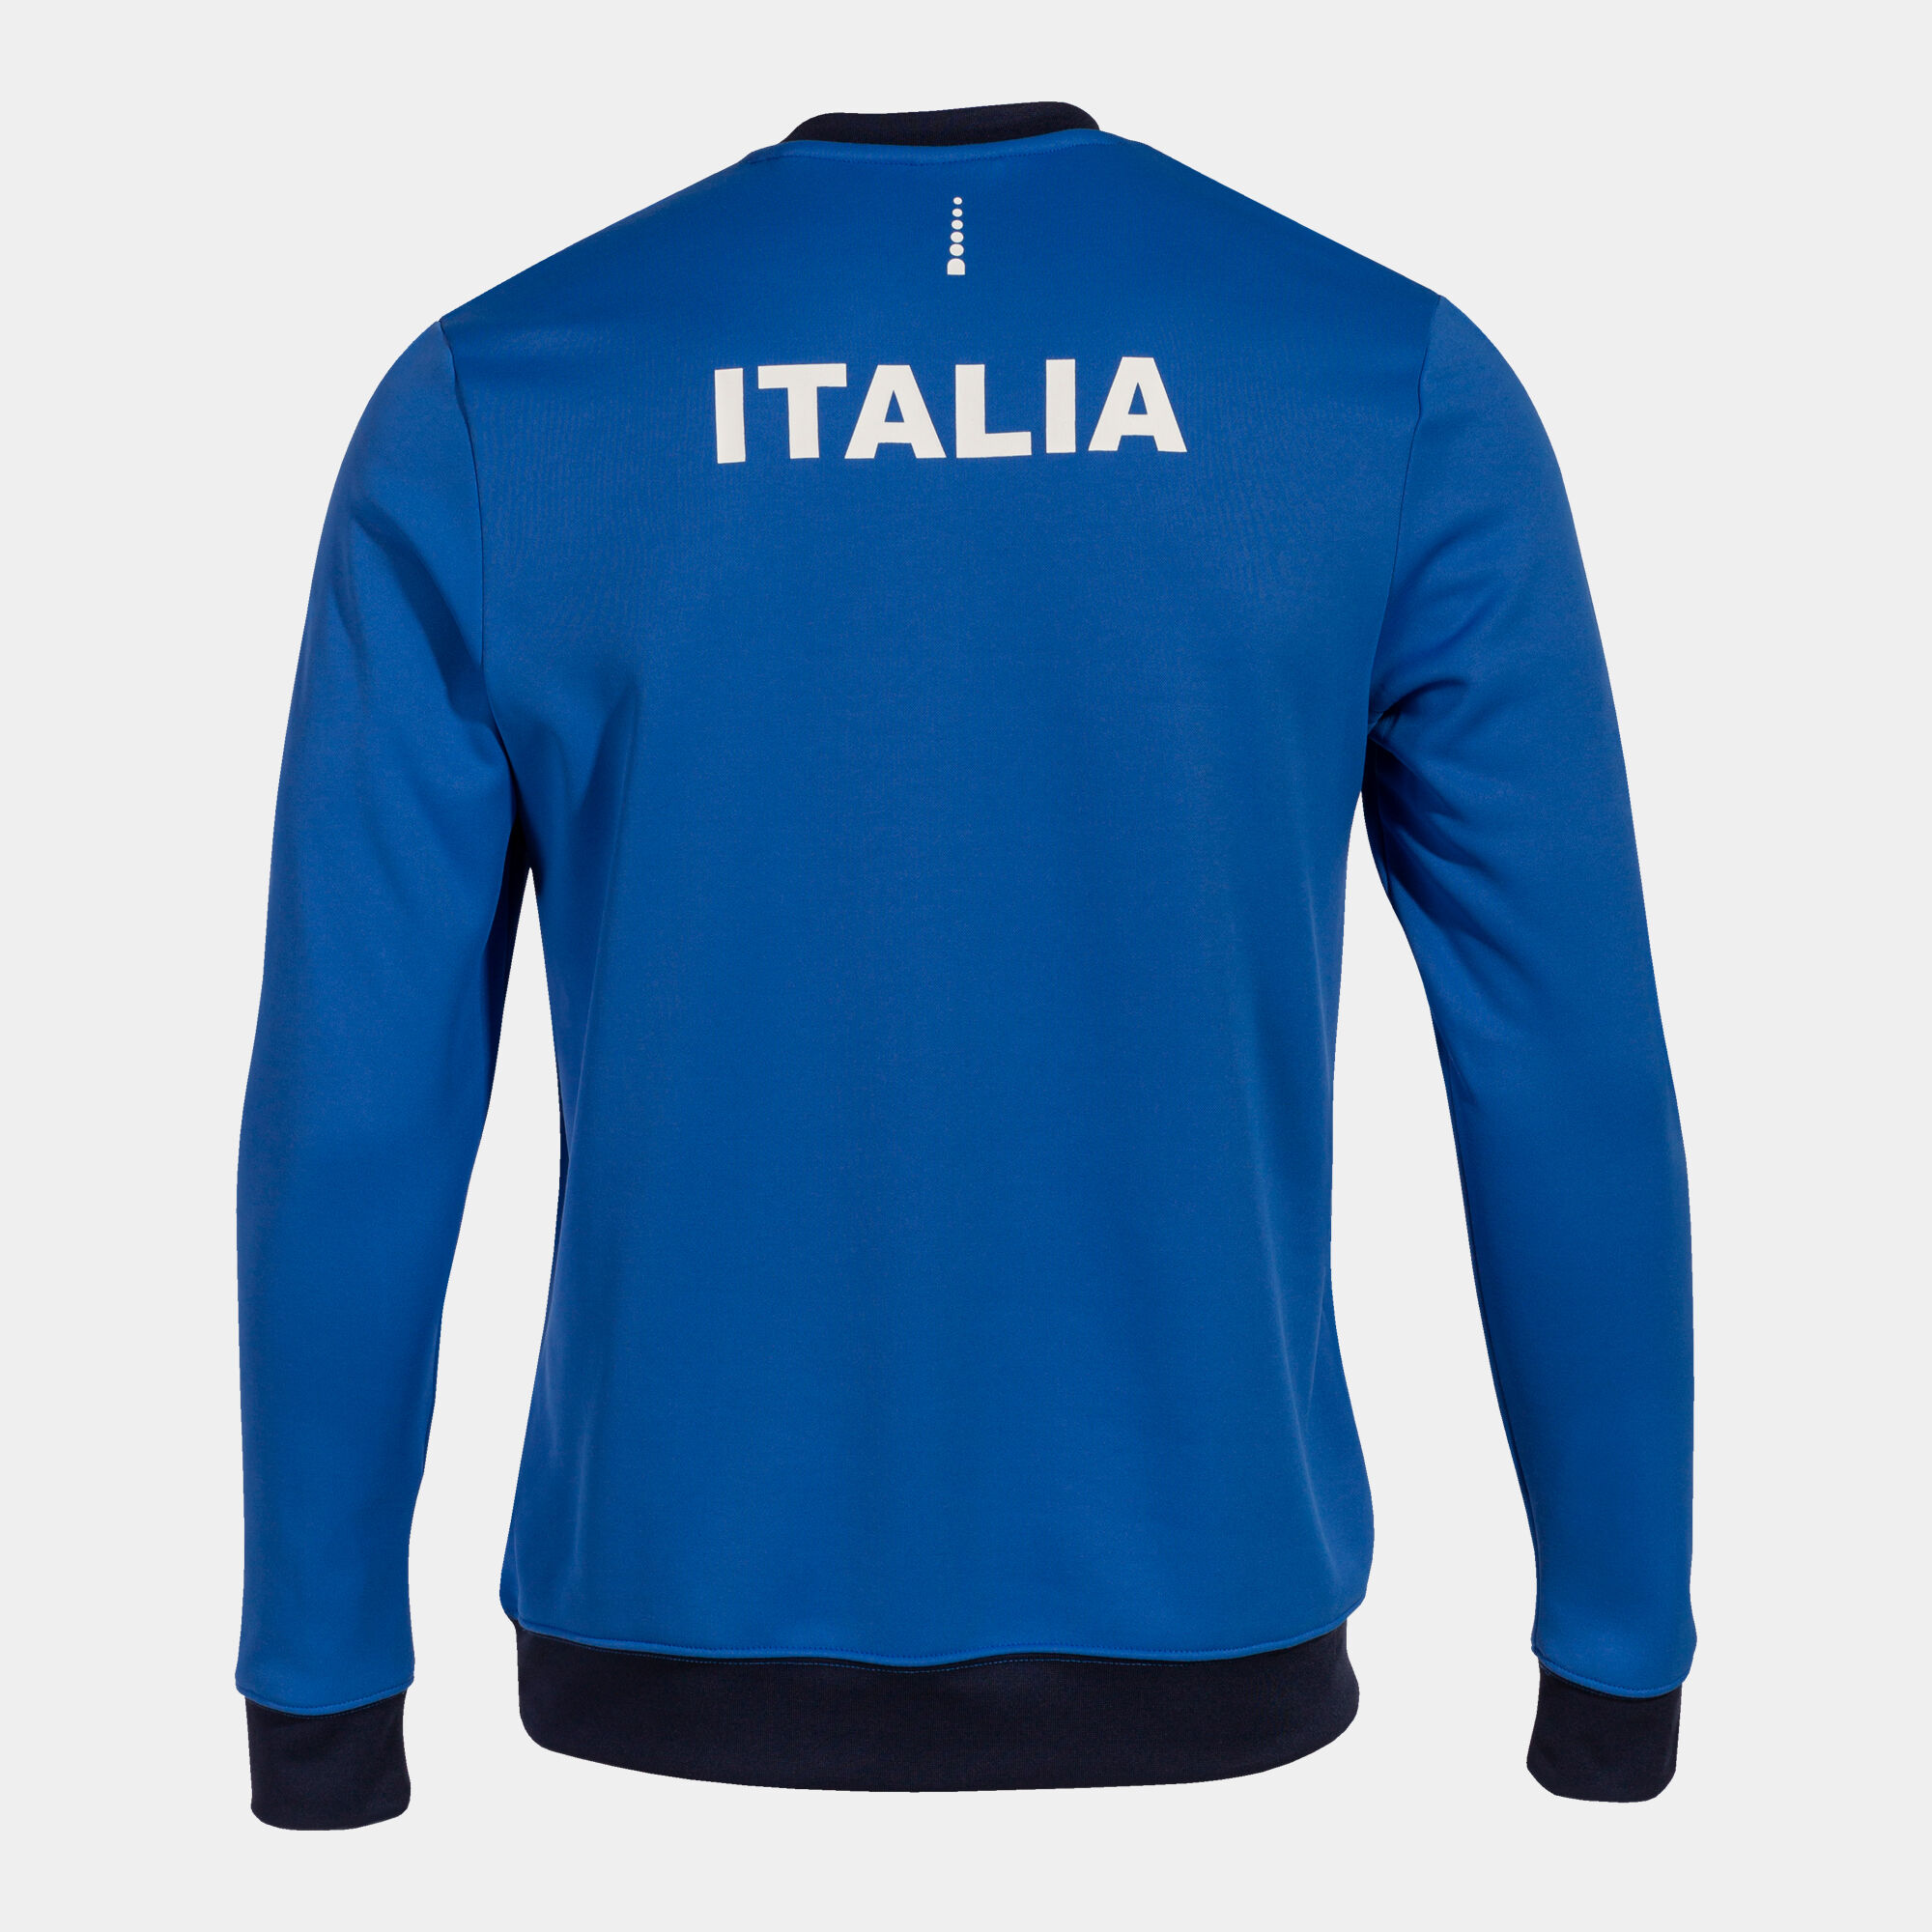 Sweatshirt Italienischer Verband Für Tennis